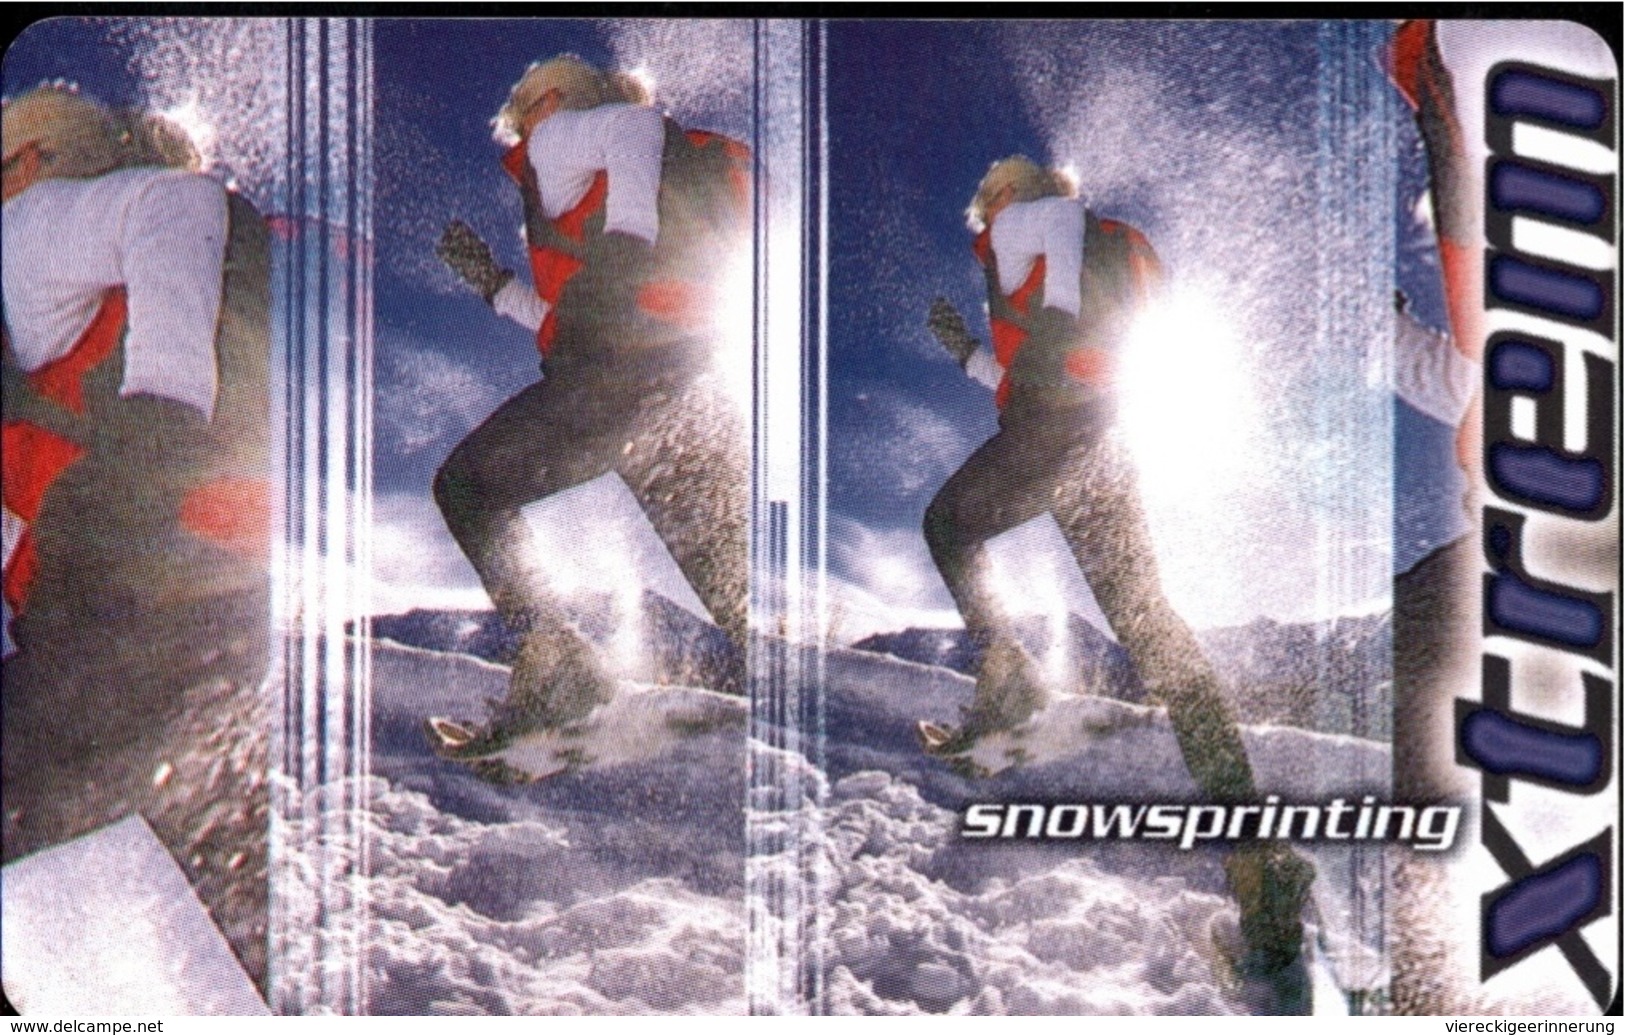 ! Telefonkarte, Telecarte, Phonecard, 1999, PD16, Sport, Snowsprinting, Germany - P & PD-Series: Schalterkarten Der Dt. Telekom